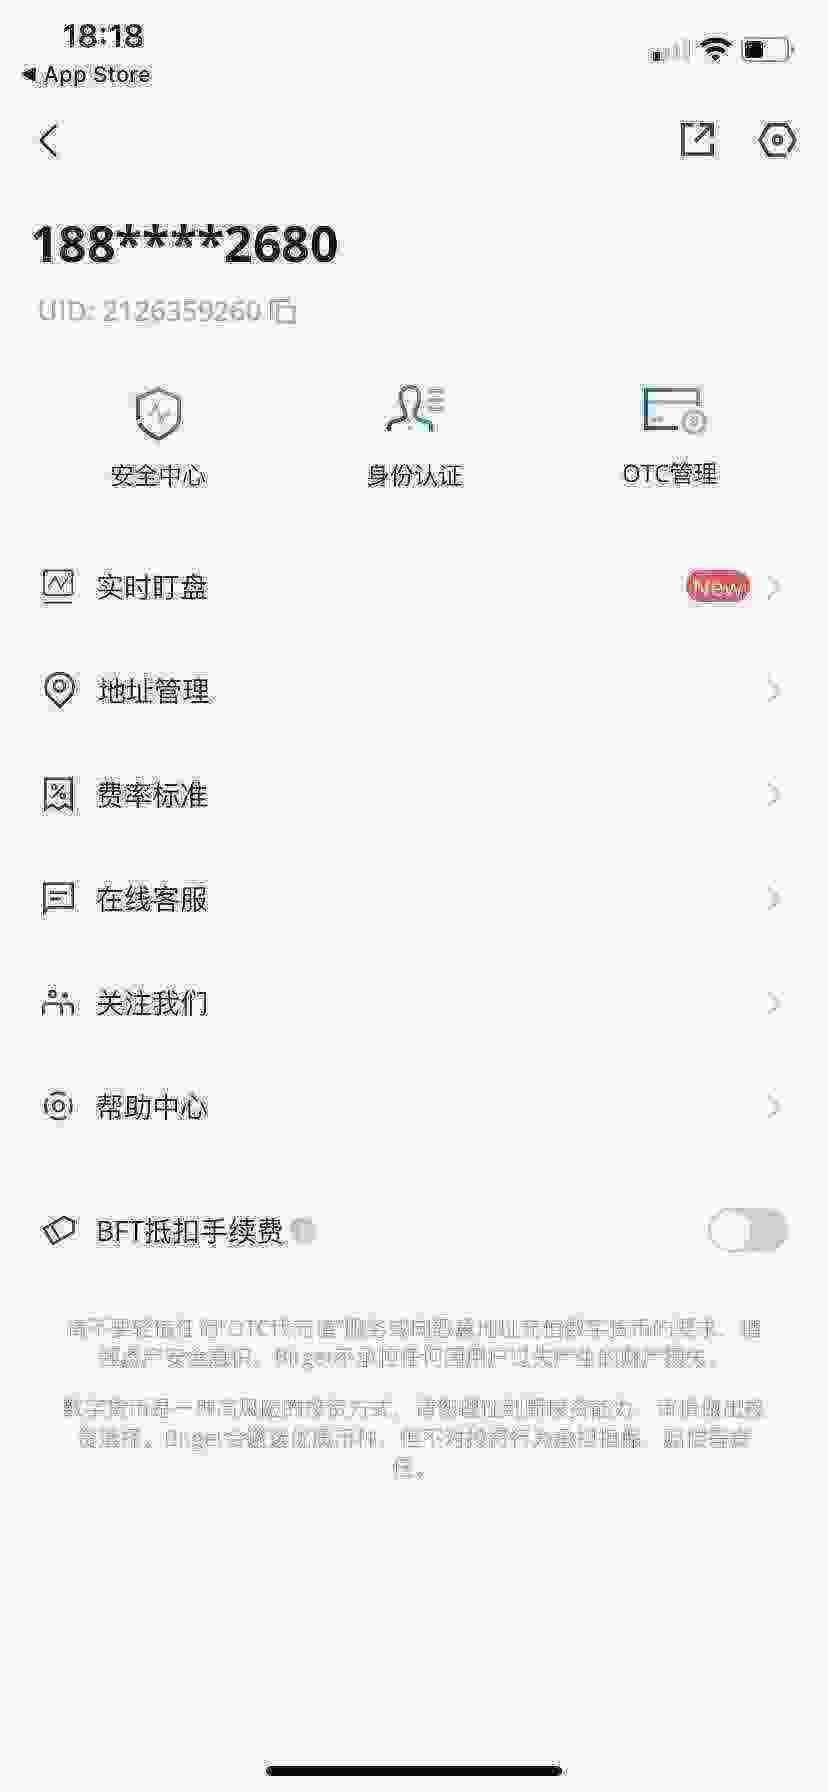 WeChat Image_20210416181909.jpg